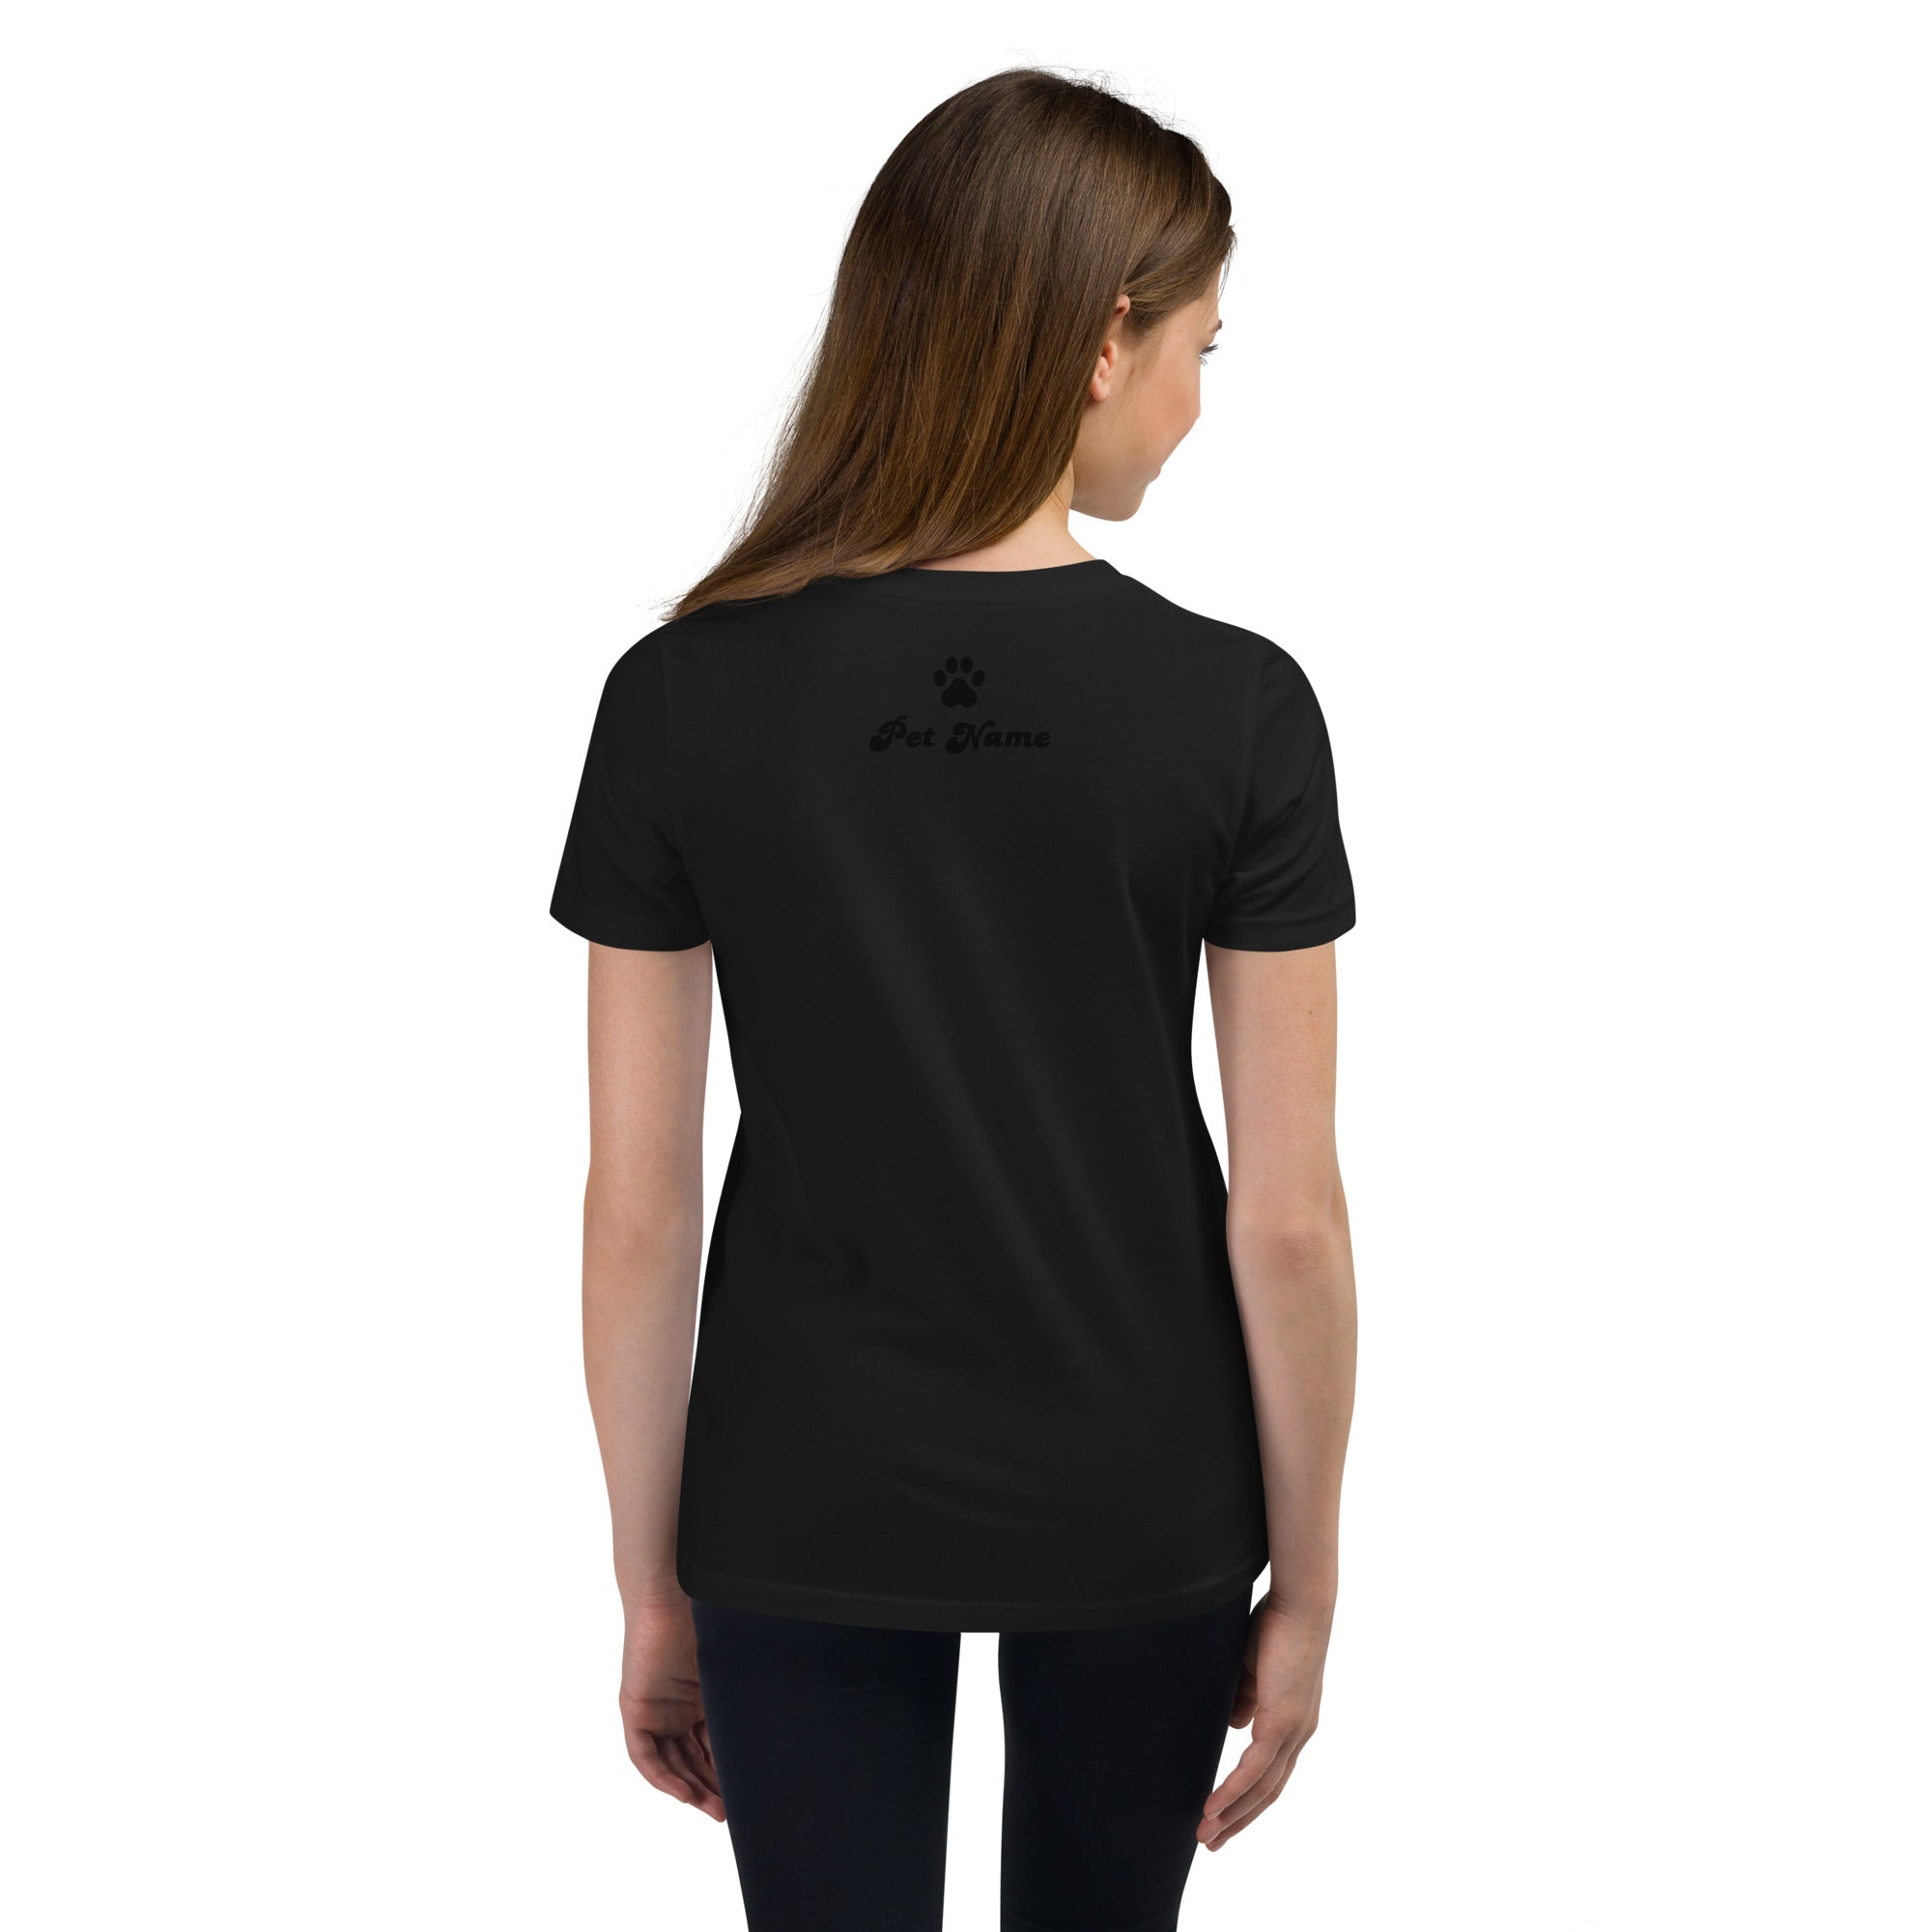 Welsh-Springer-Spaniel Youth Short Sleeve T-Shirt